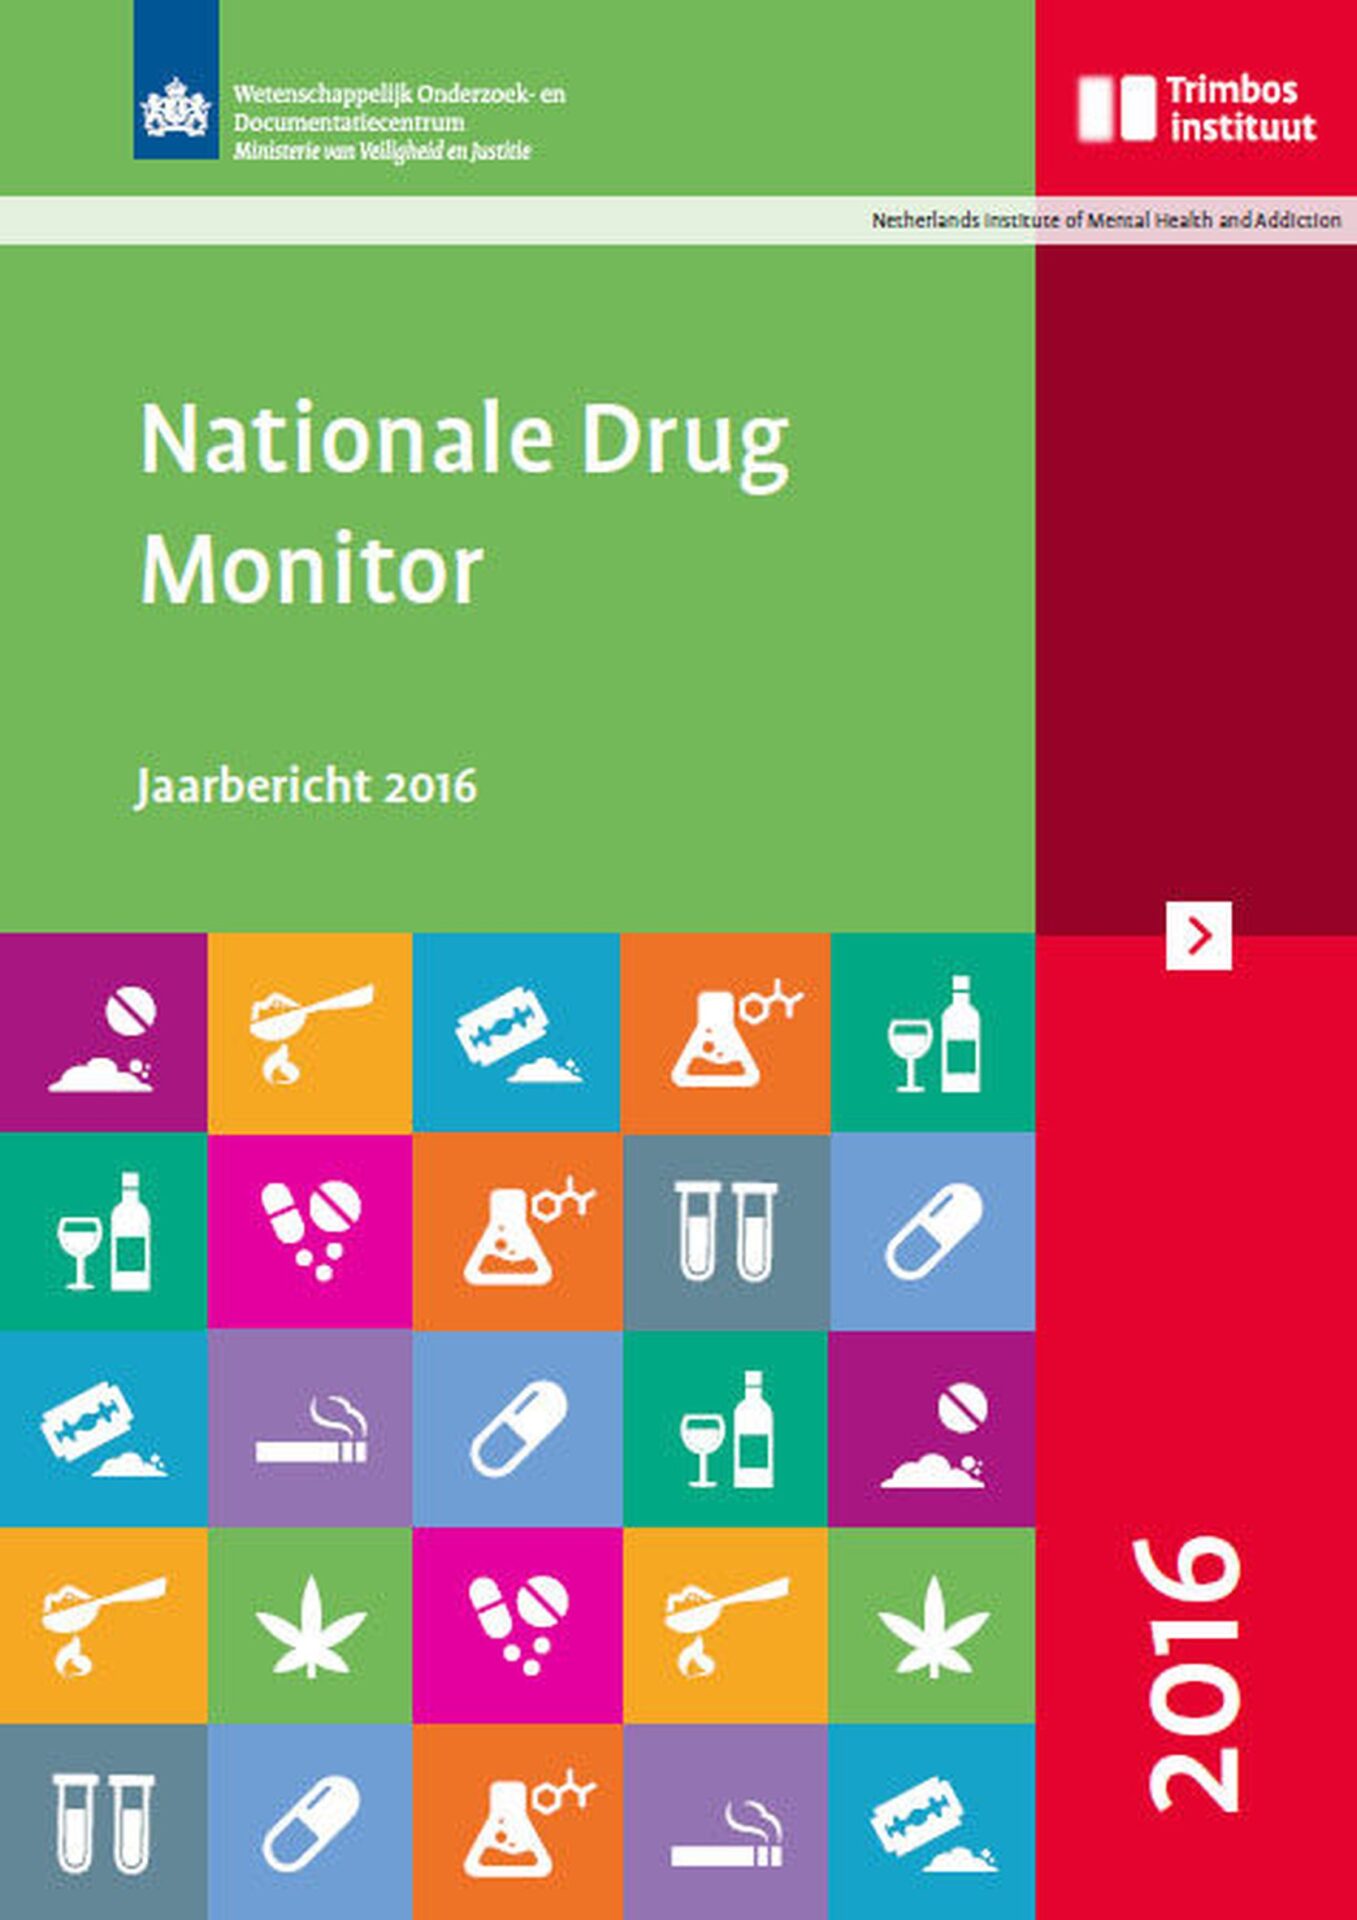 Jaarbericht 2016 van de Nationale Drug Monitor verschenen